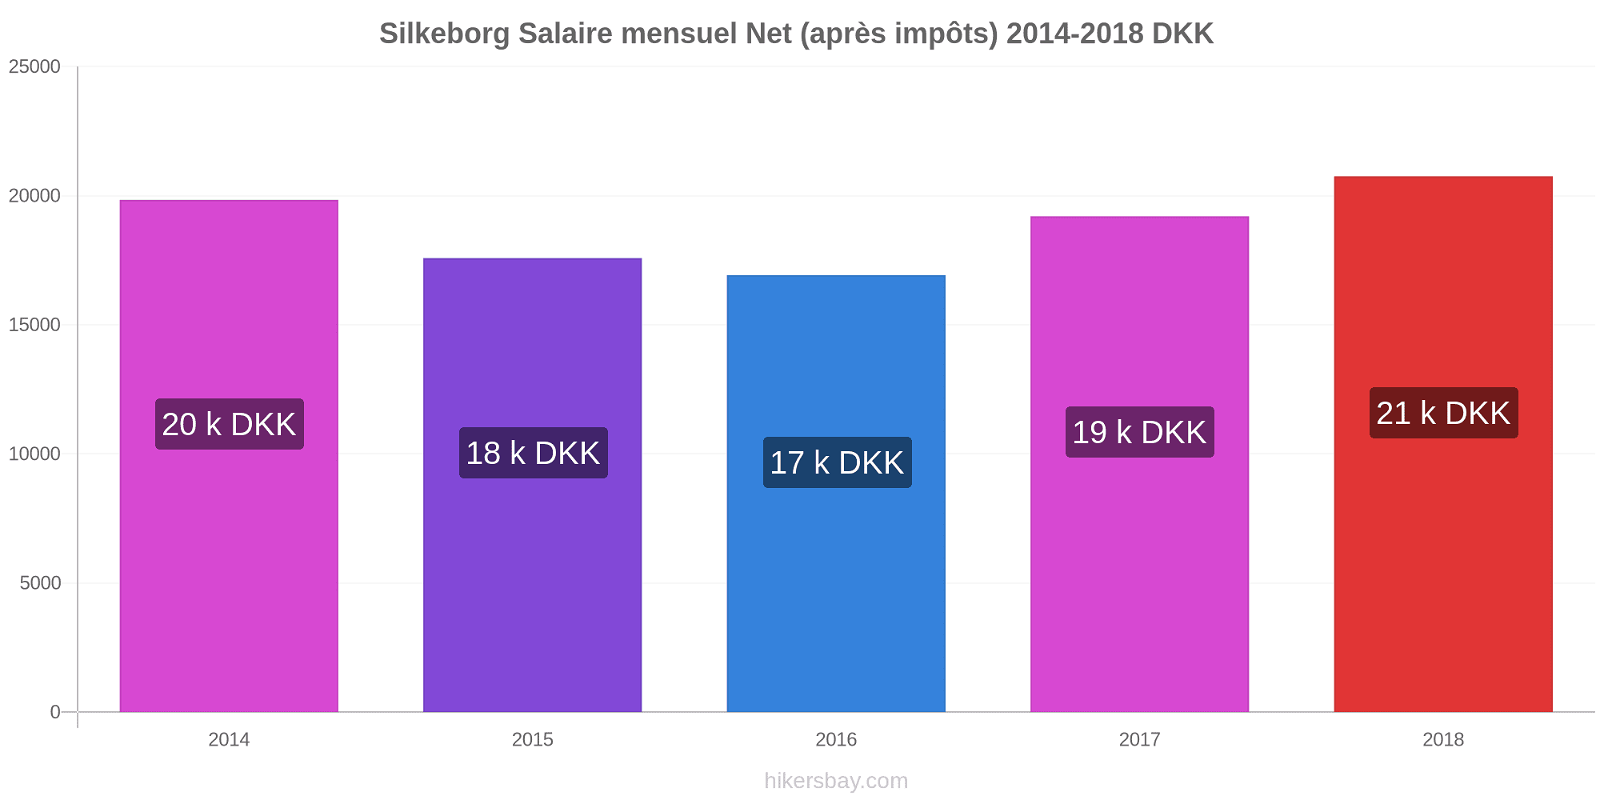 Silkeborg changements de prix Salaire mensuel Net (après impôts) hikersbay.com